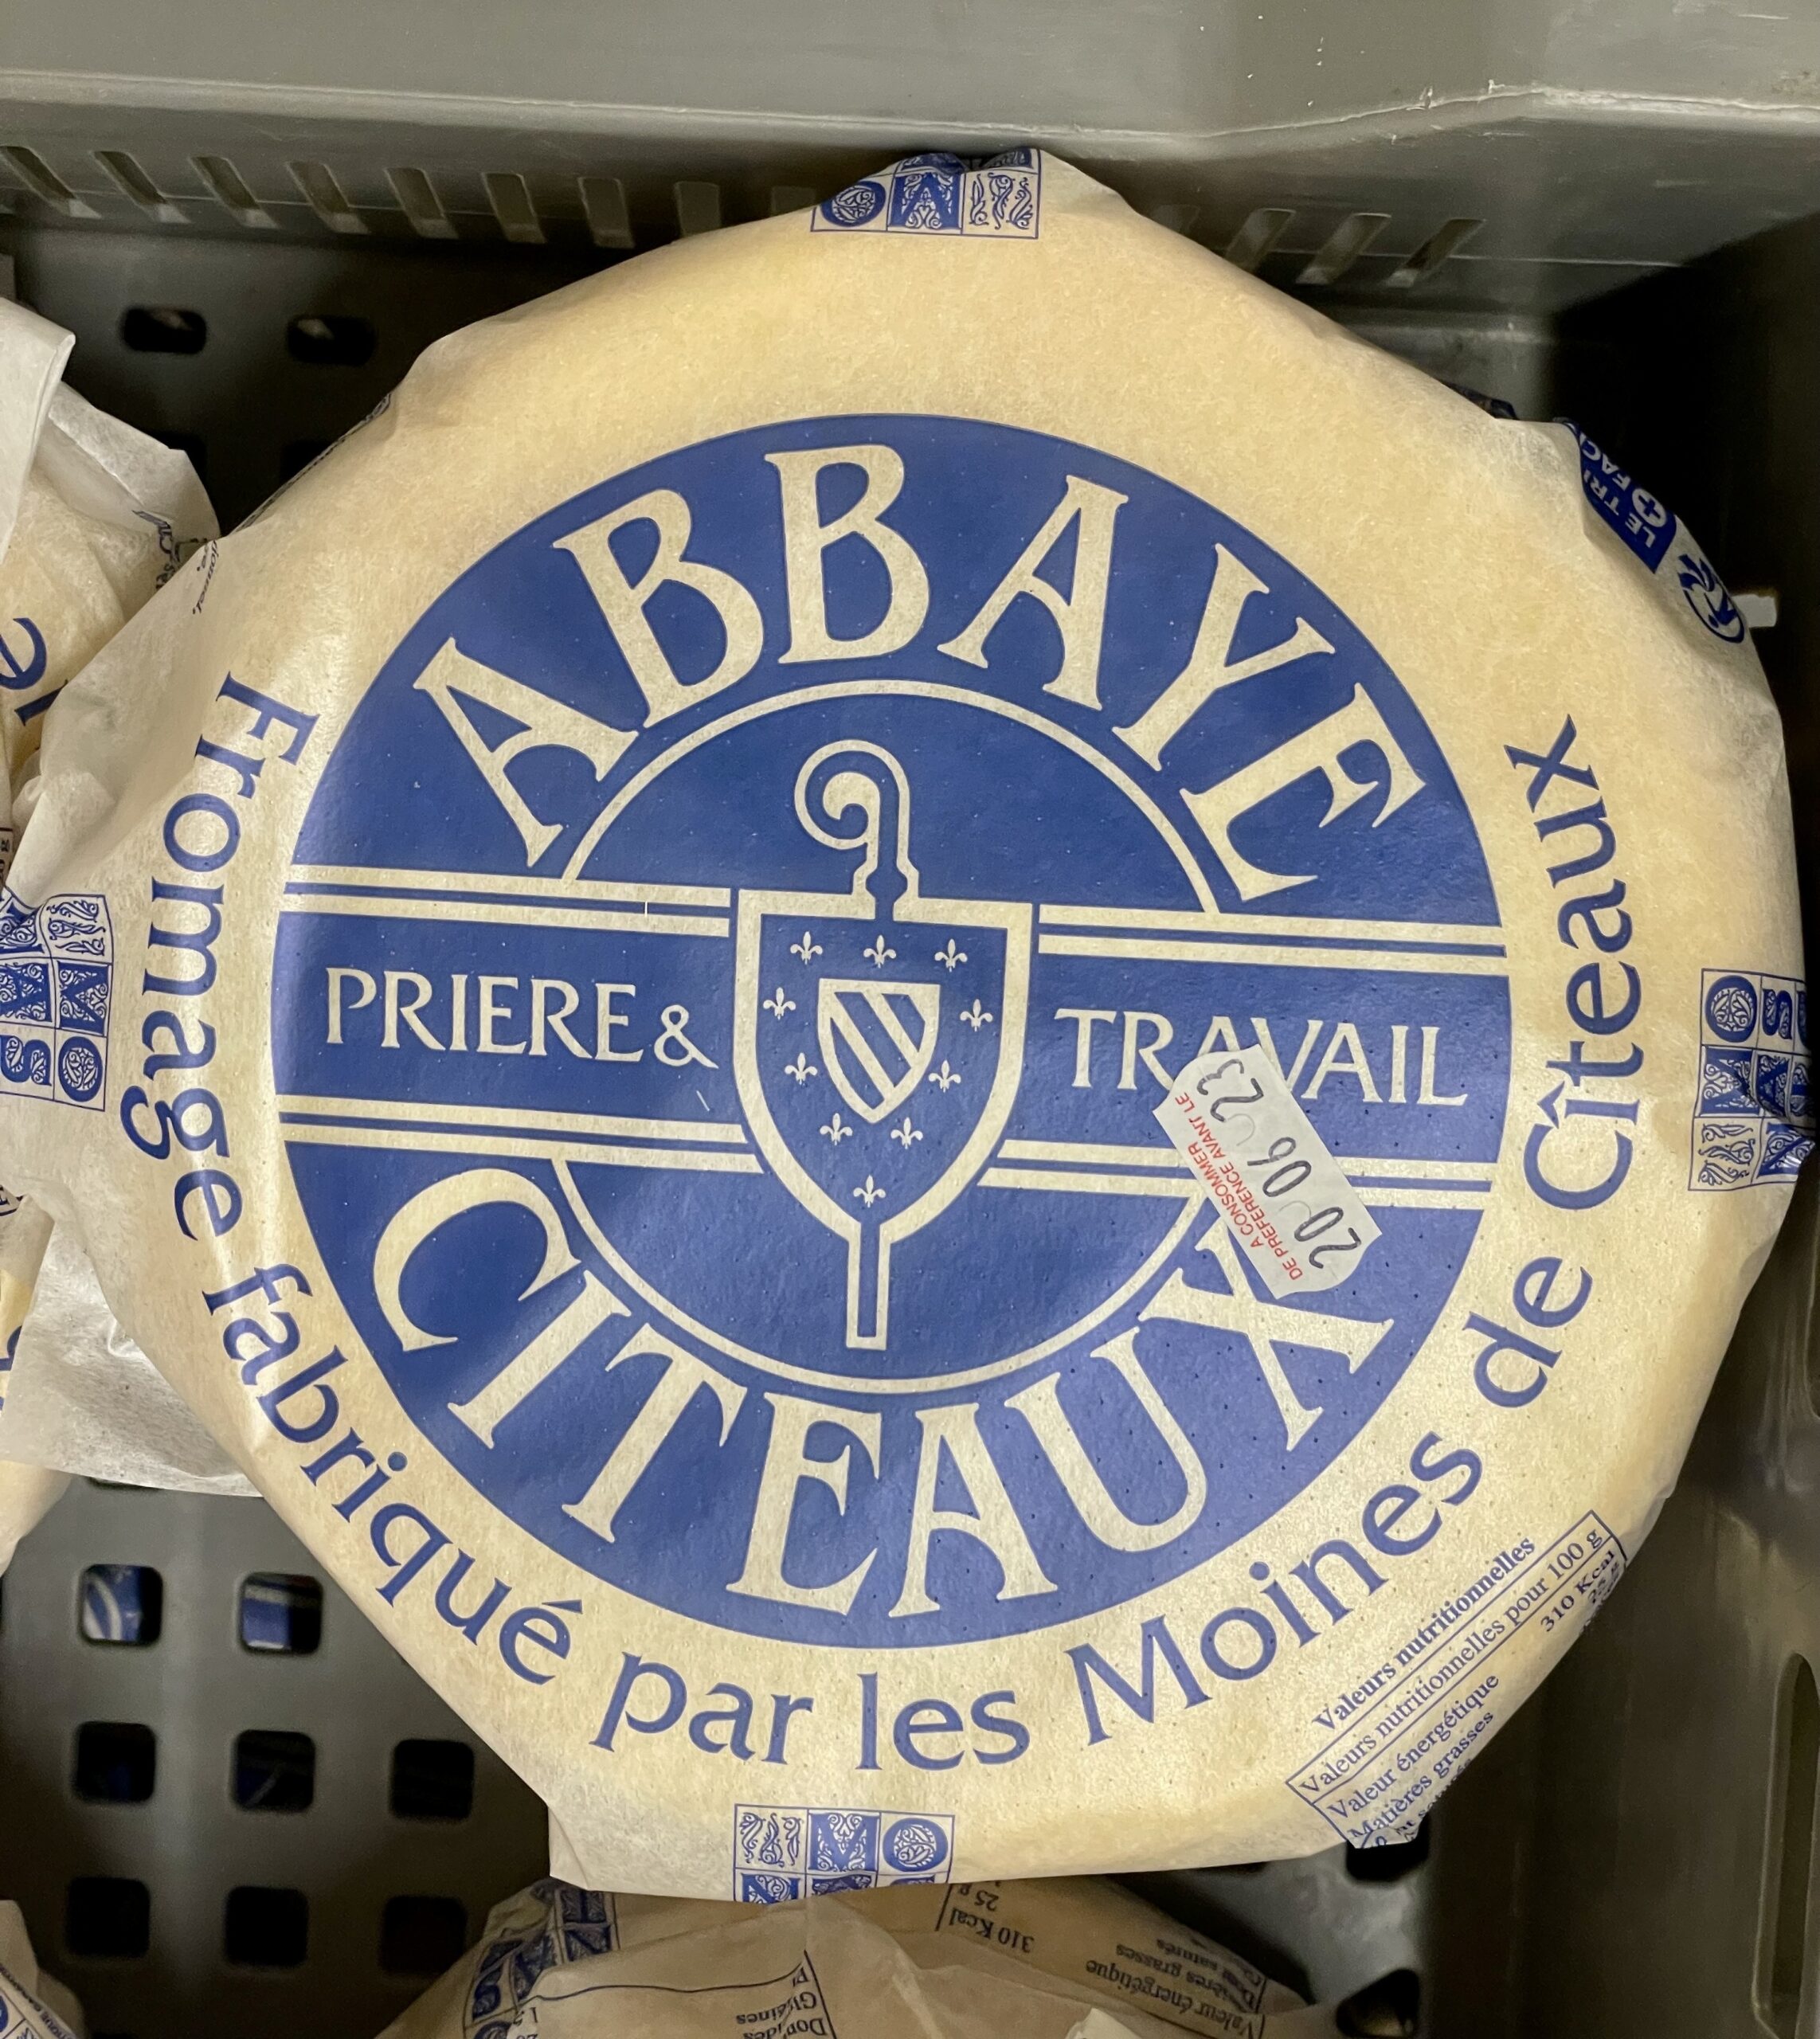 Flâneries dijonnaises - 2ème partie/aufildeslieux.fr/ L'éponyme fromage de Cîteaux-photo © K.HIBBS